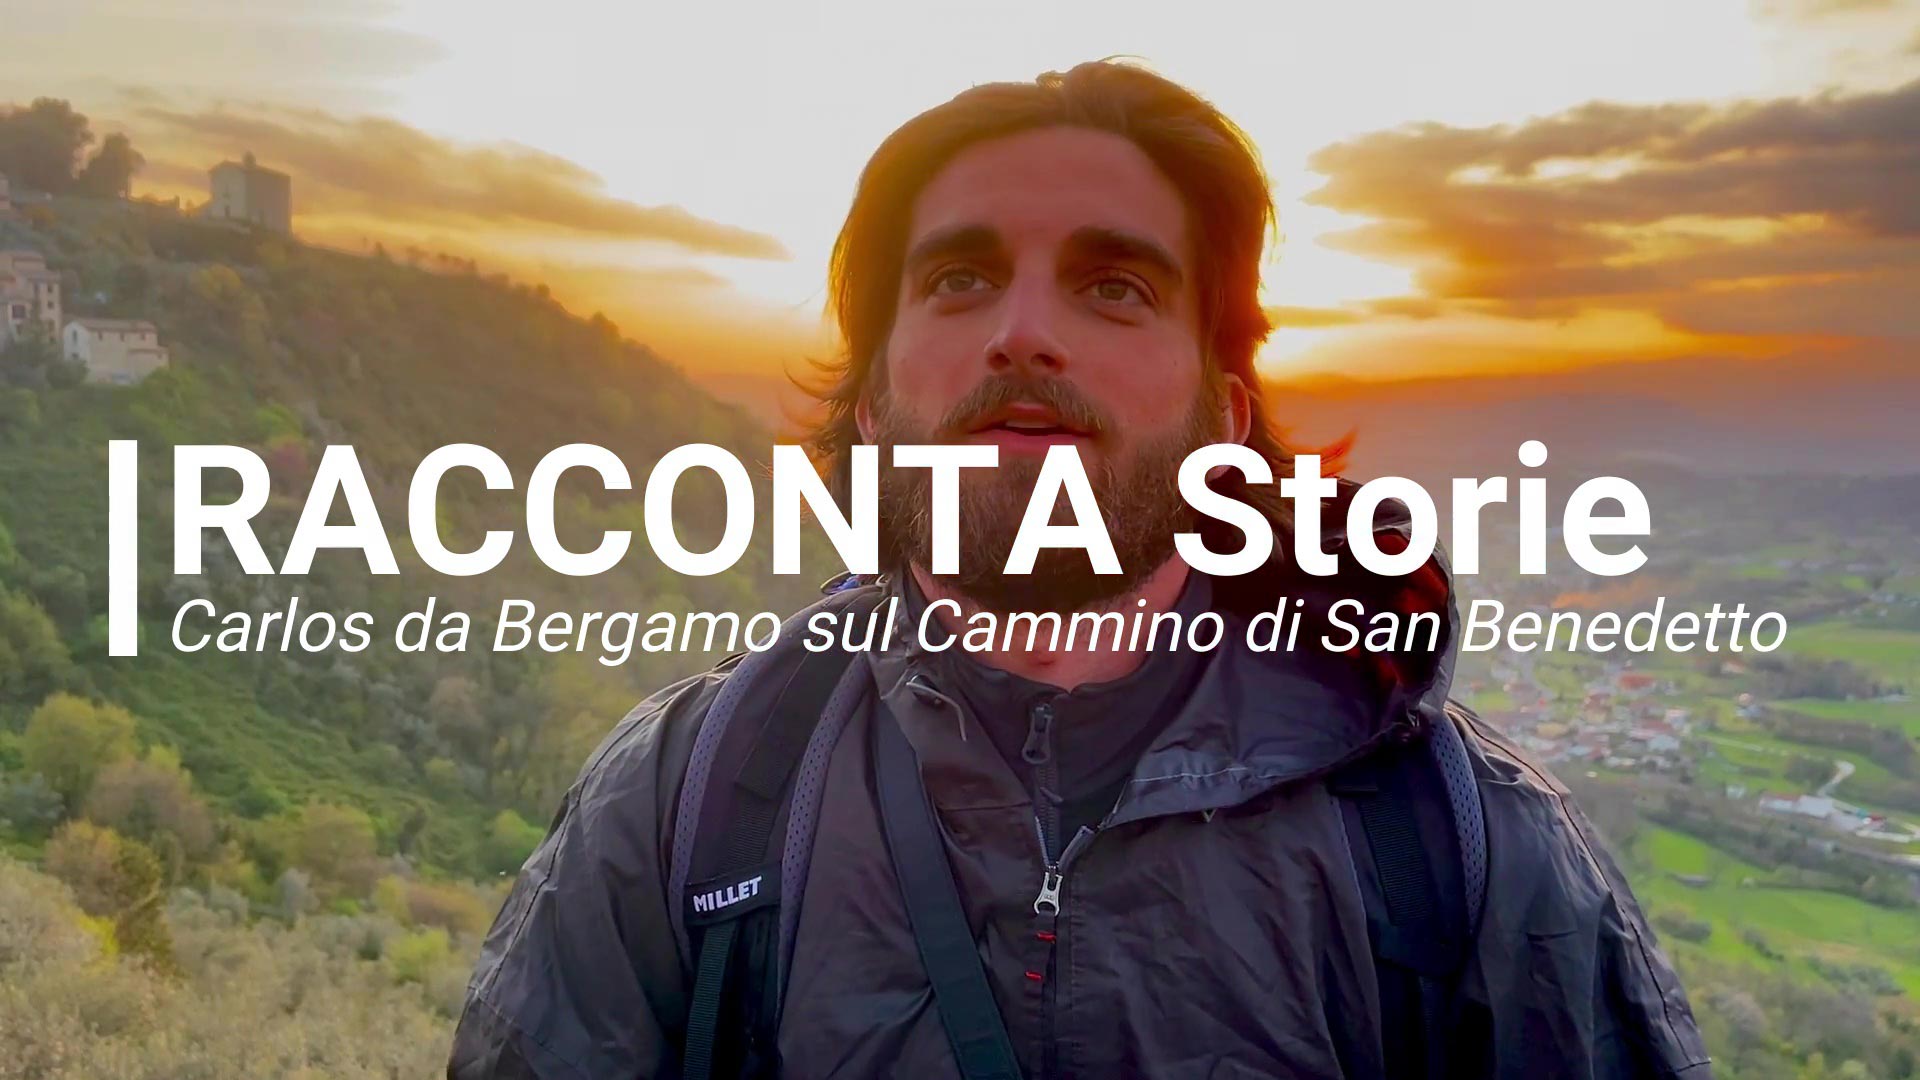 Racconta Storie: Carlos da Bergamo sul Cammino di San Benedetto